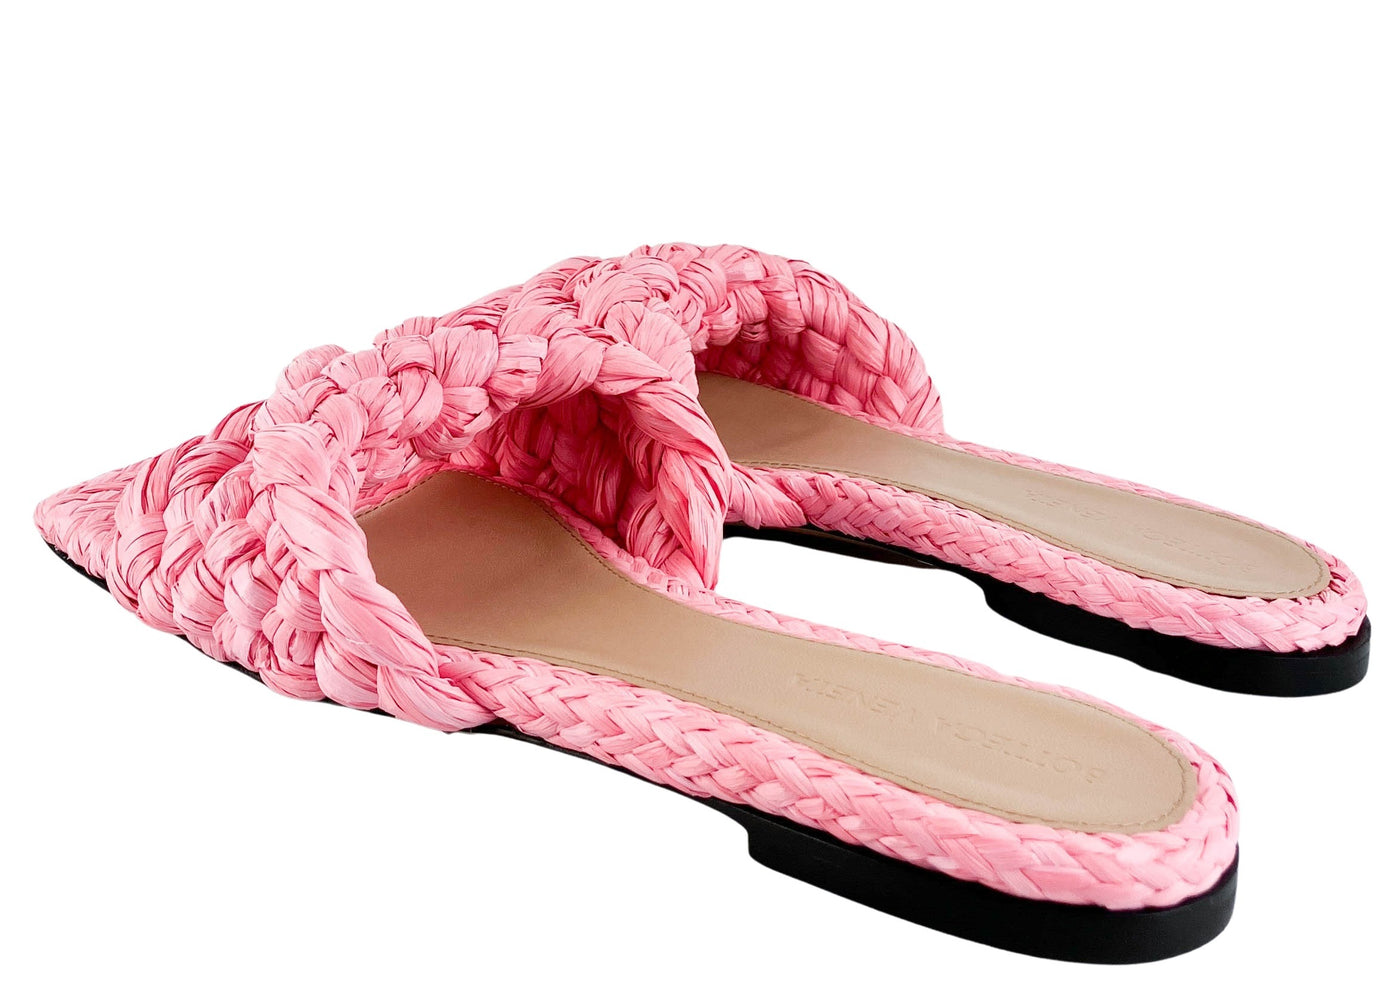 Bottega Veneta Braided Raffia Sandals in Blossom - Discounts on Bottega Veneta at UAL